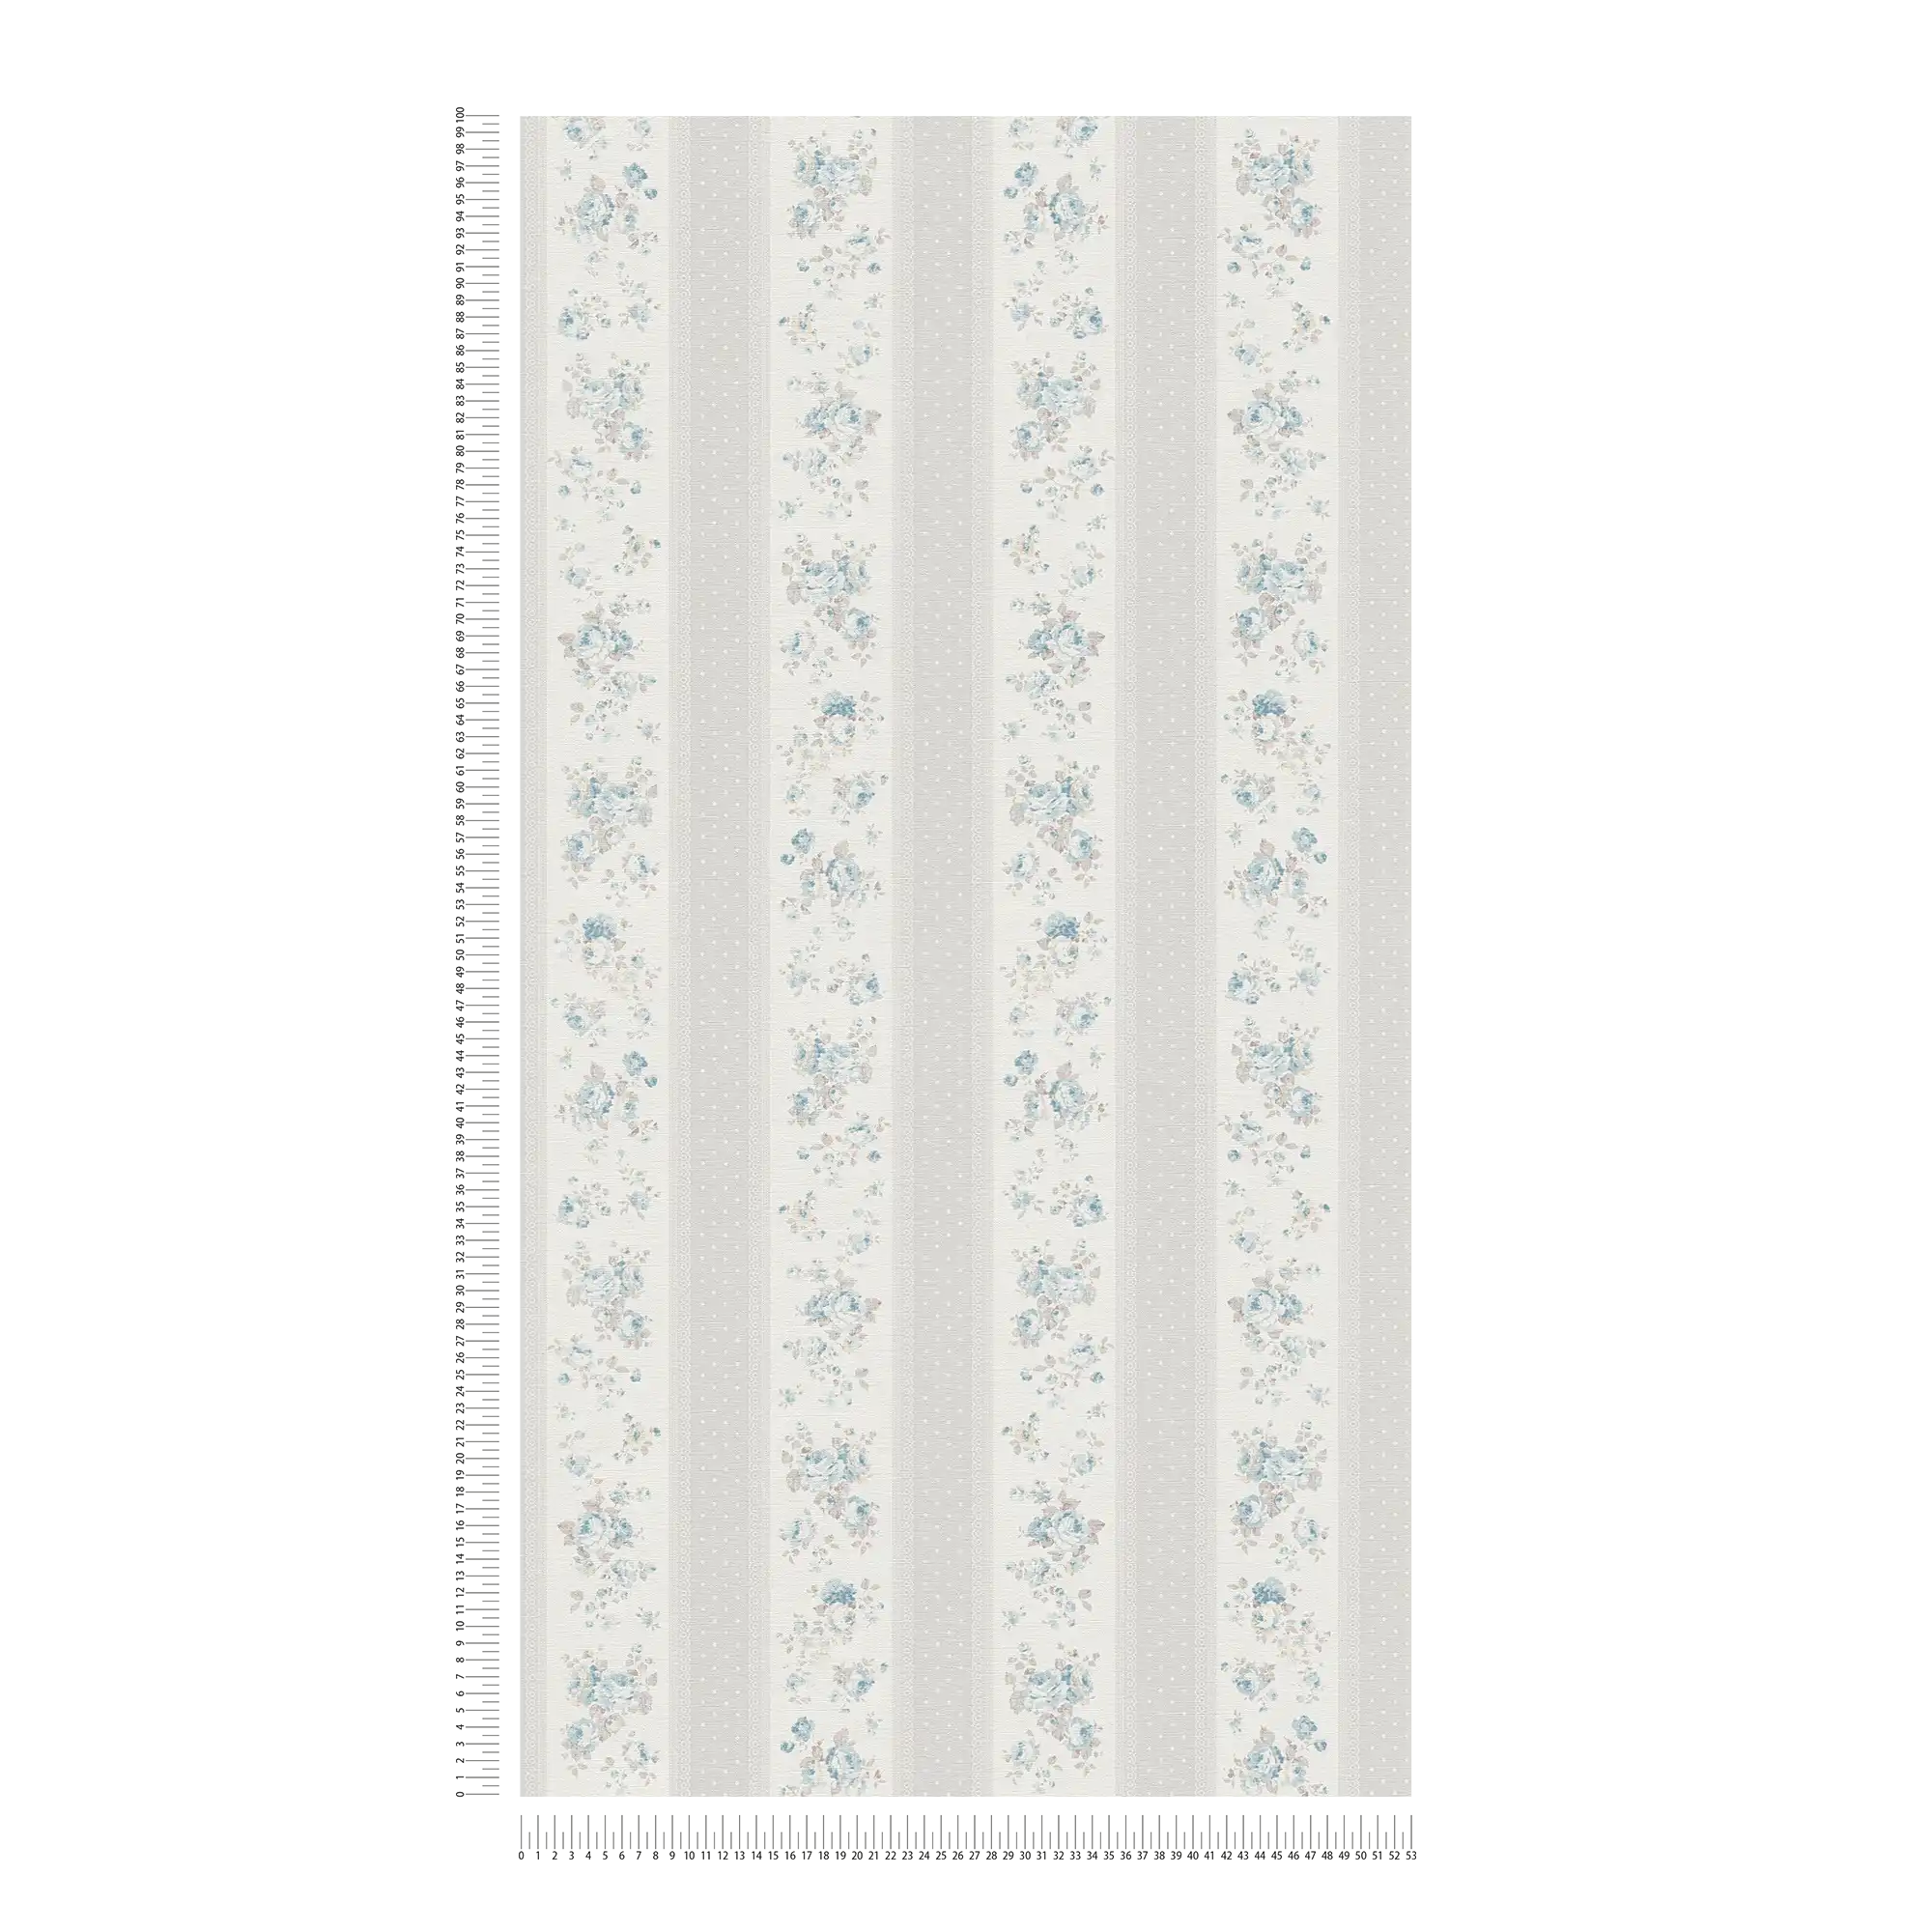             Vliesbehang met stippen en bloemenstrepen - grijs, wit, blauw
        